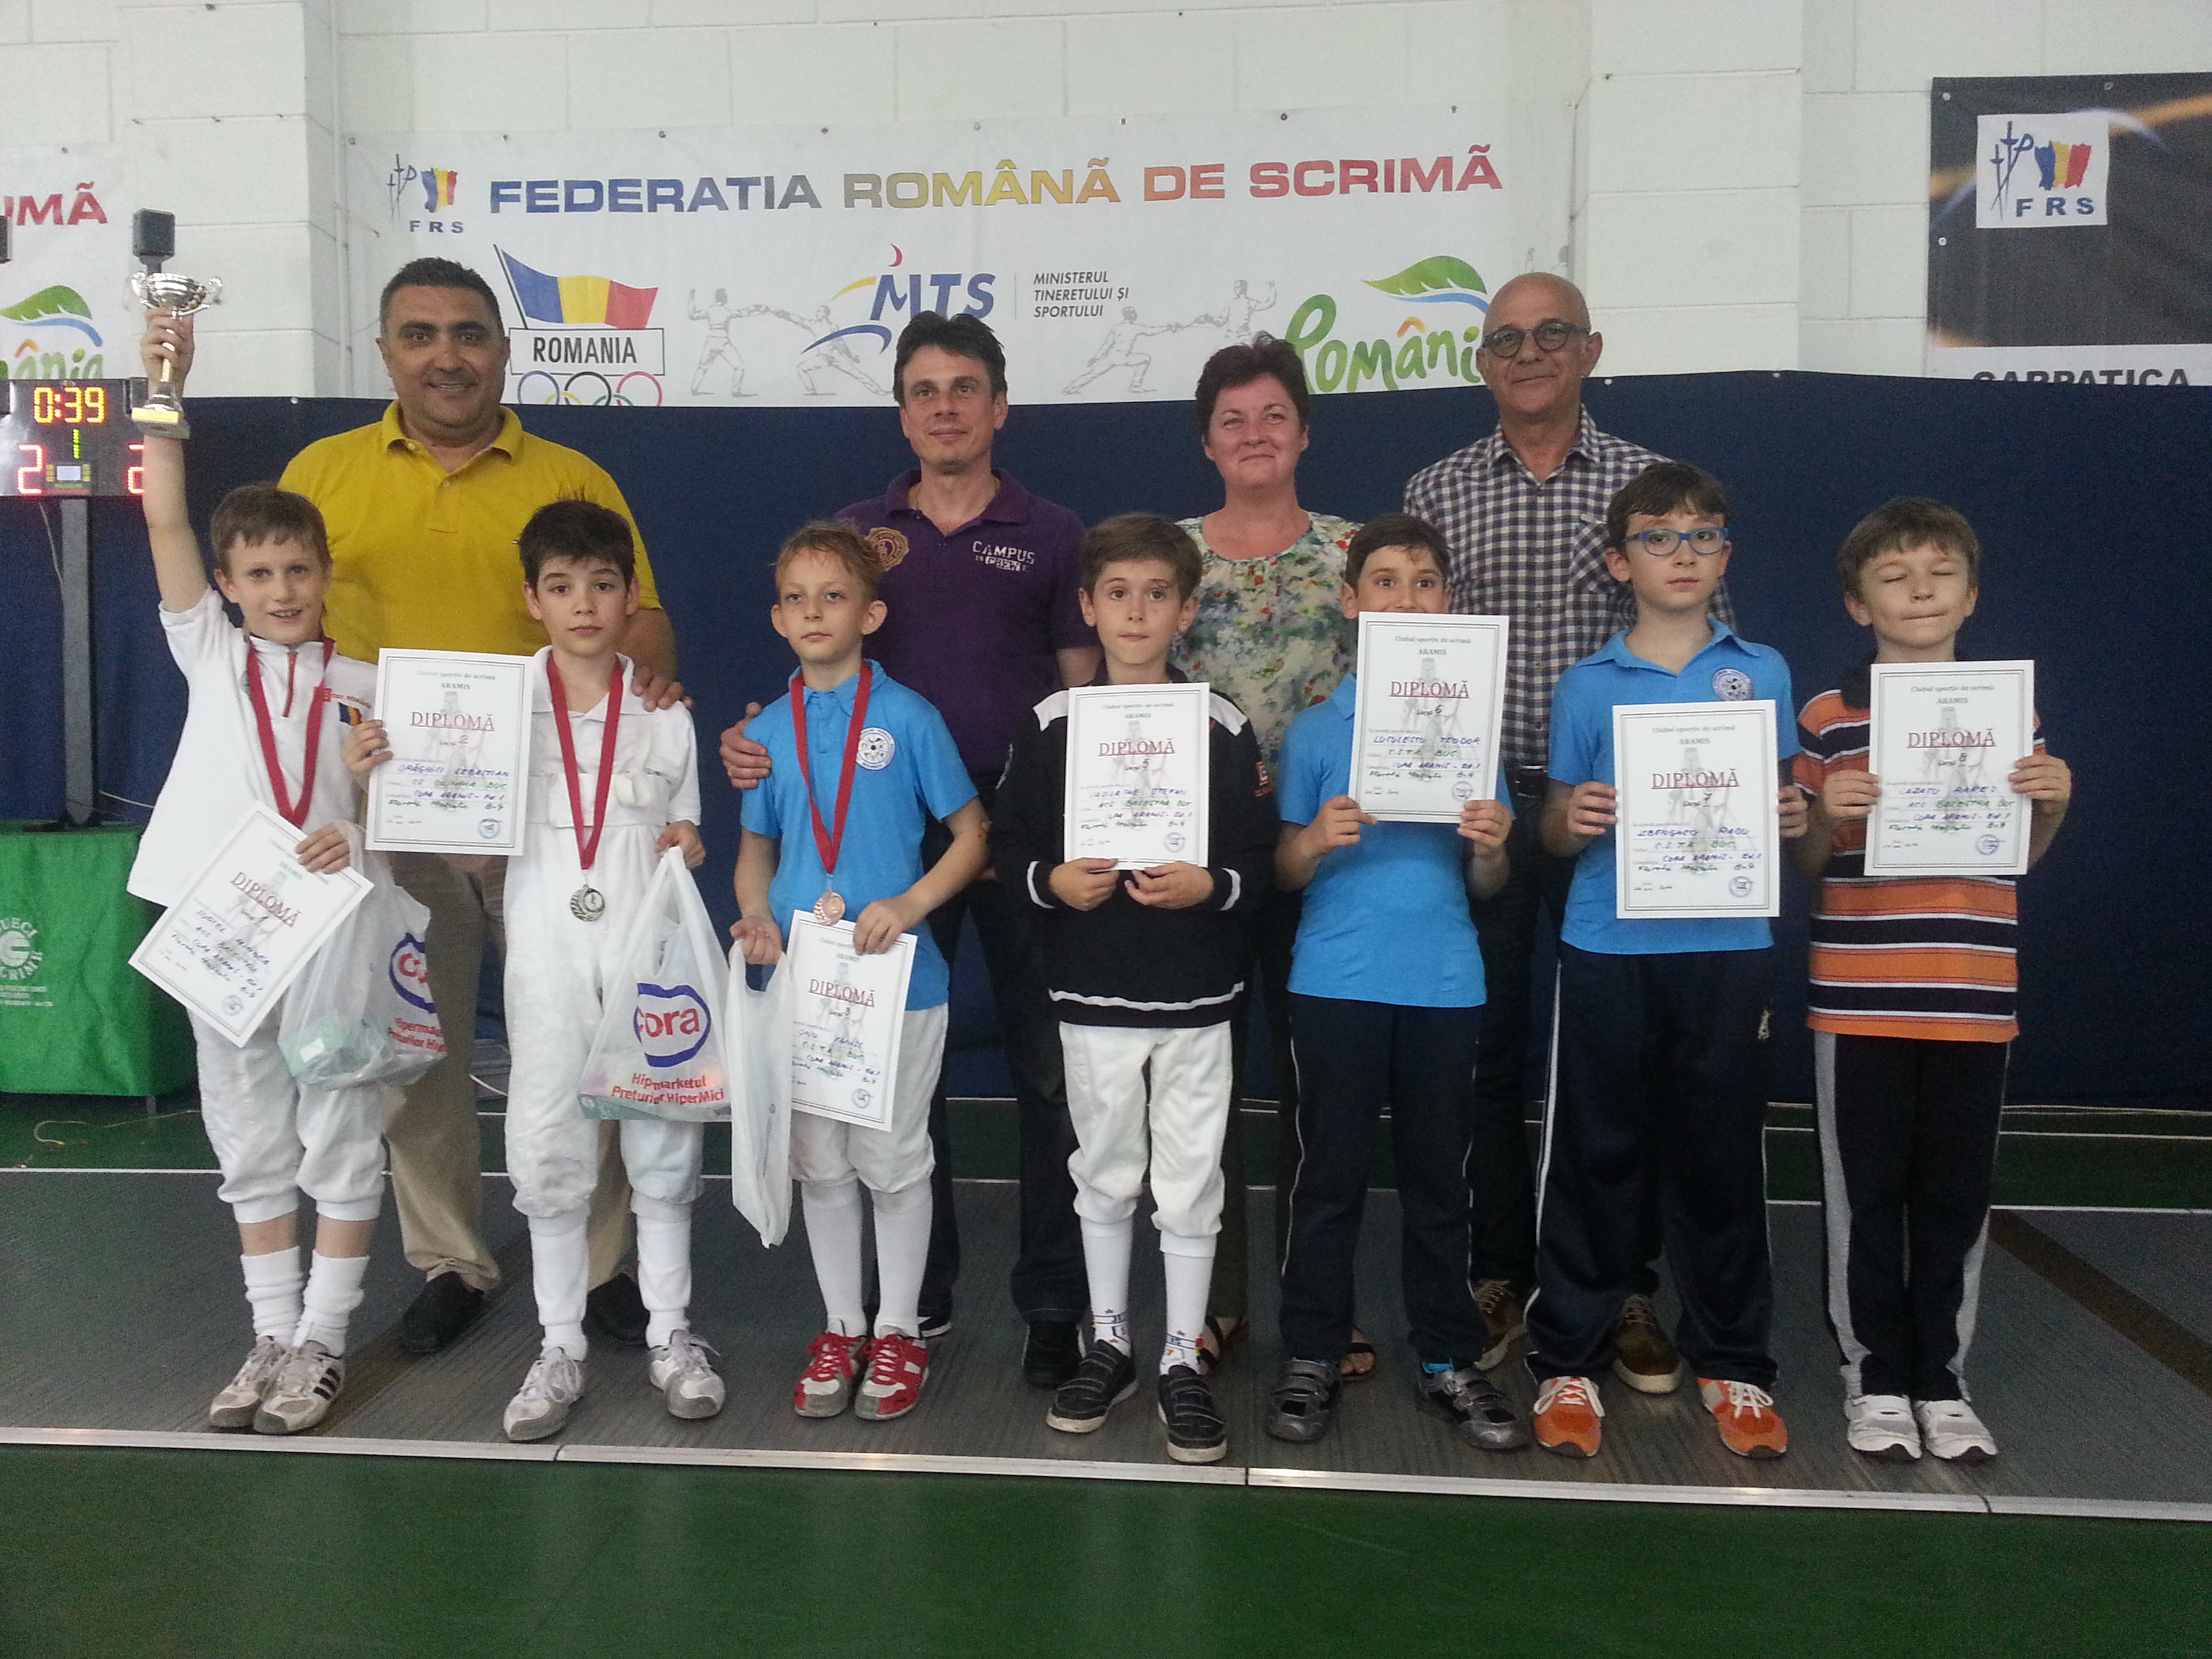 Petru Surcel, Mihnea Surcel și Alexandru Pîrva sunt câștigătorii primei zile la Cupa Aramis la floretă pentru copii